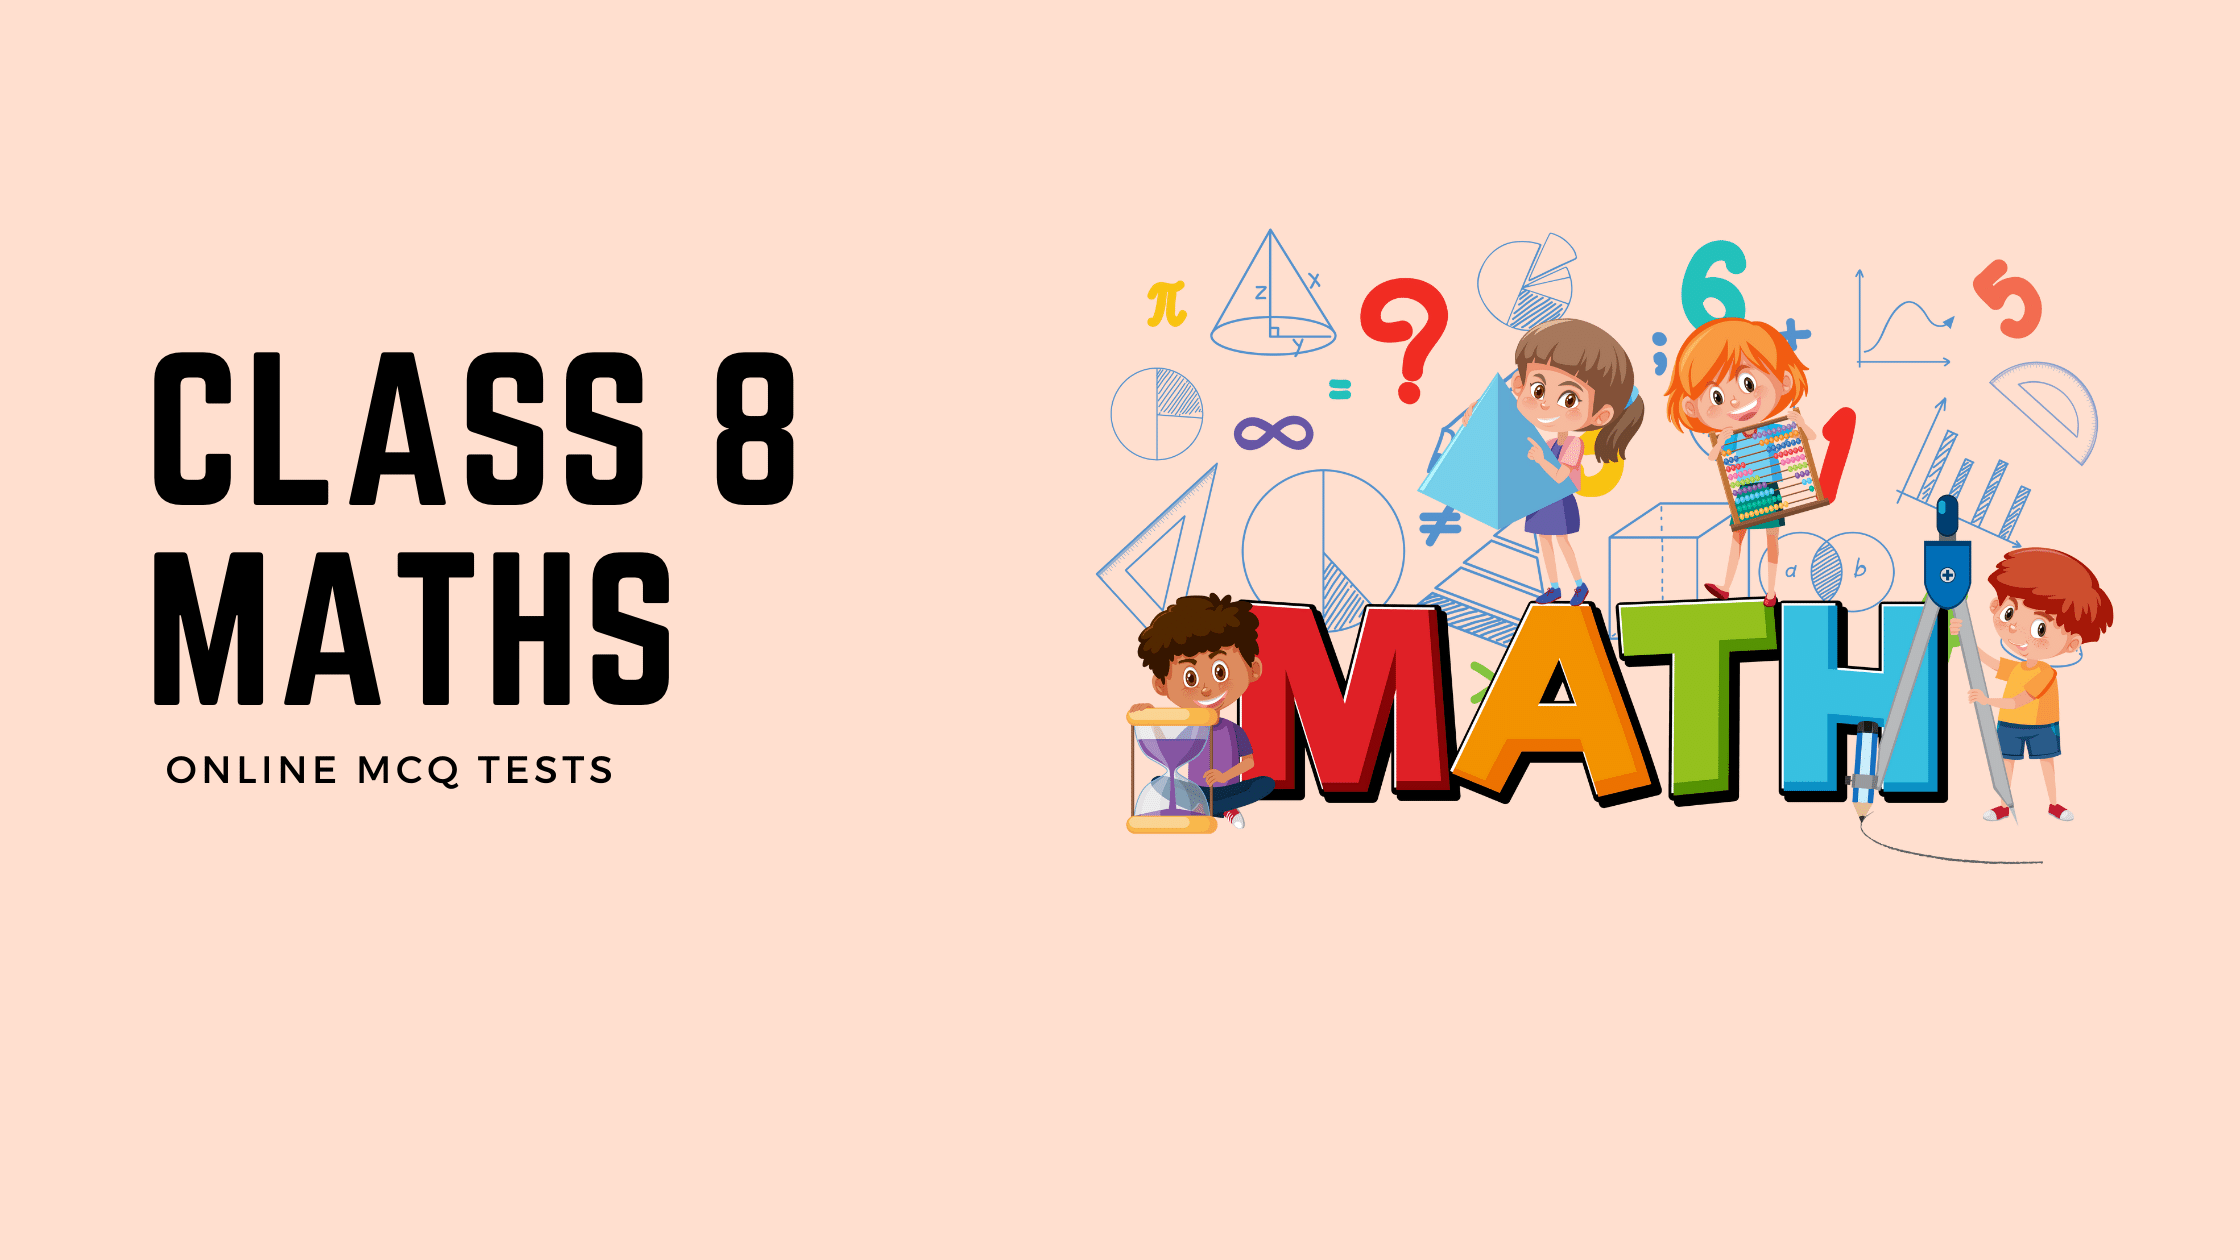 Online test for Class 8 Maths or maths quiz for class 8